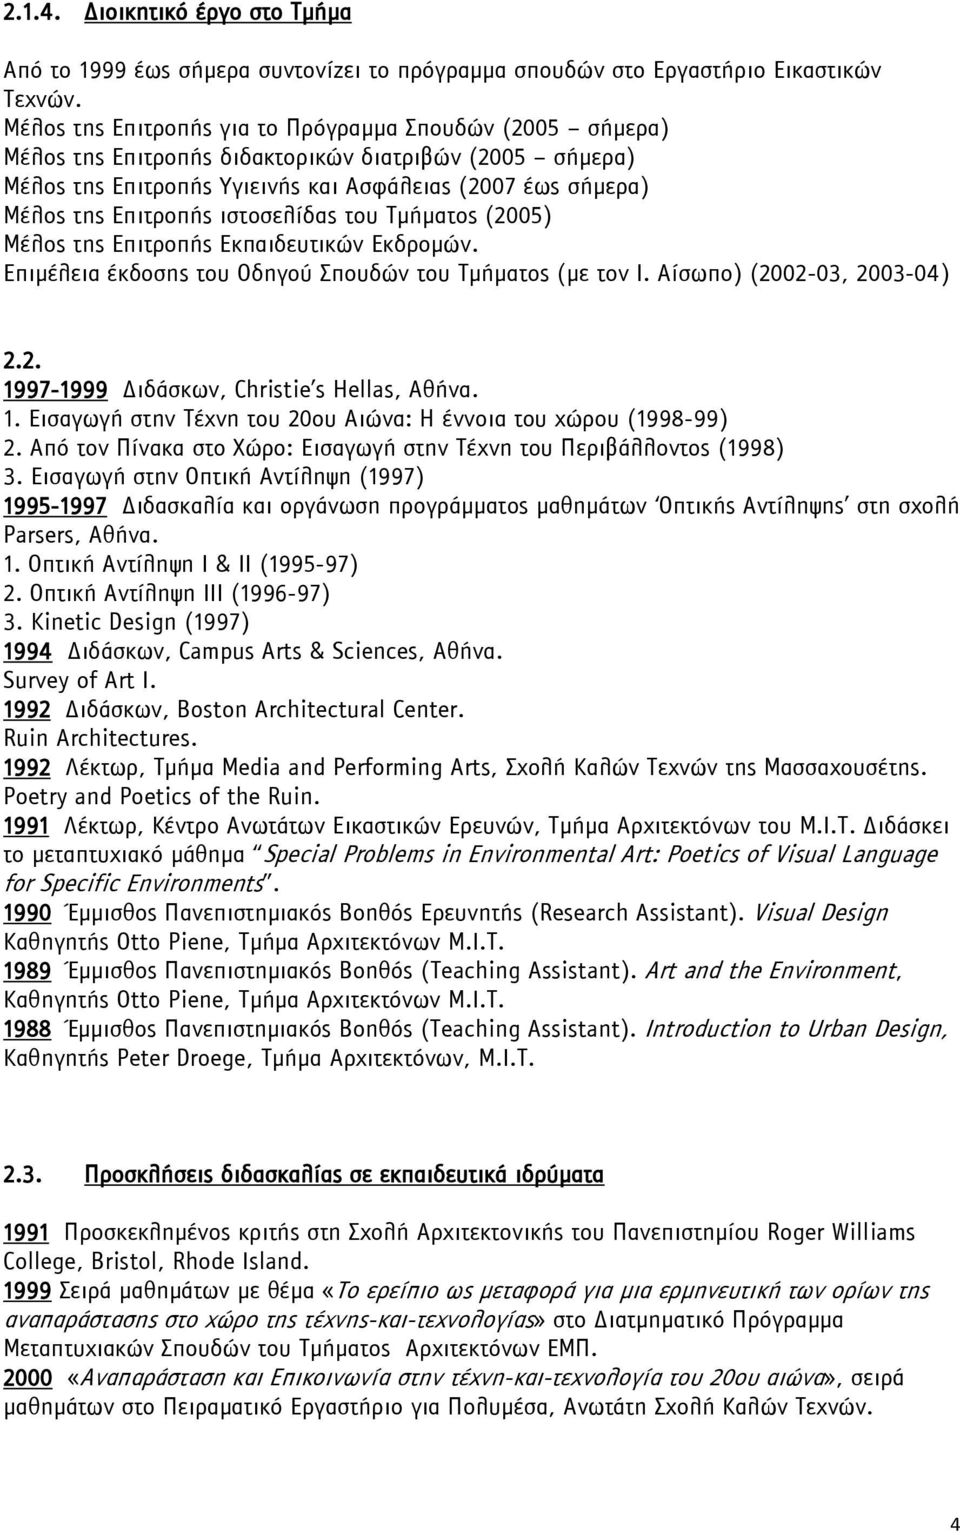 ιστοσελίδας του Τμήματος (2005) Μέλος της Επιτροπής Εκπαιδευτικών Εκδρομών. Επιμέλεια έκδοσης του Οδηγού Σπουδών του Τμήματος (με τον Ι. Αίσωπο) (2002-03, 2003-04) 2.2. 1997-1999 Διδάσκων, Christie s Hellas, Αθήνα.